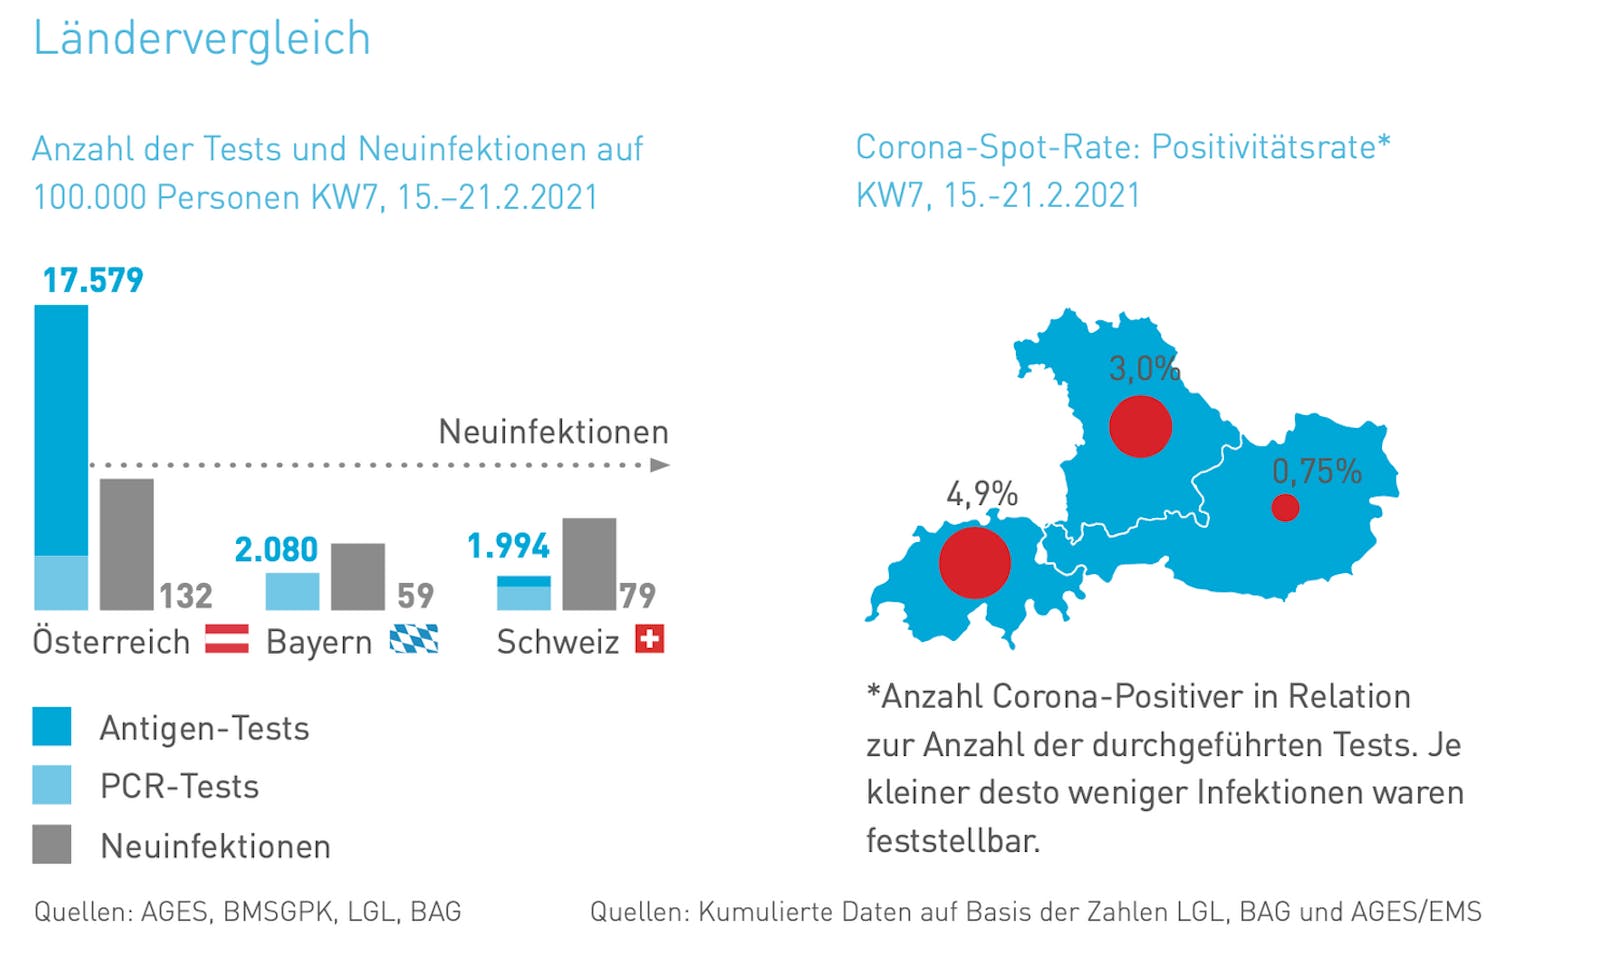 Die Positivitätsrate in Österreich ist weit geringer als in Bayern oder der Schweiz.